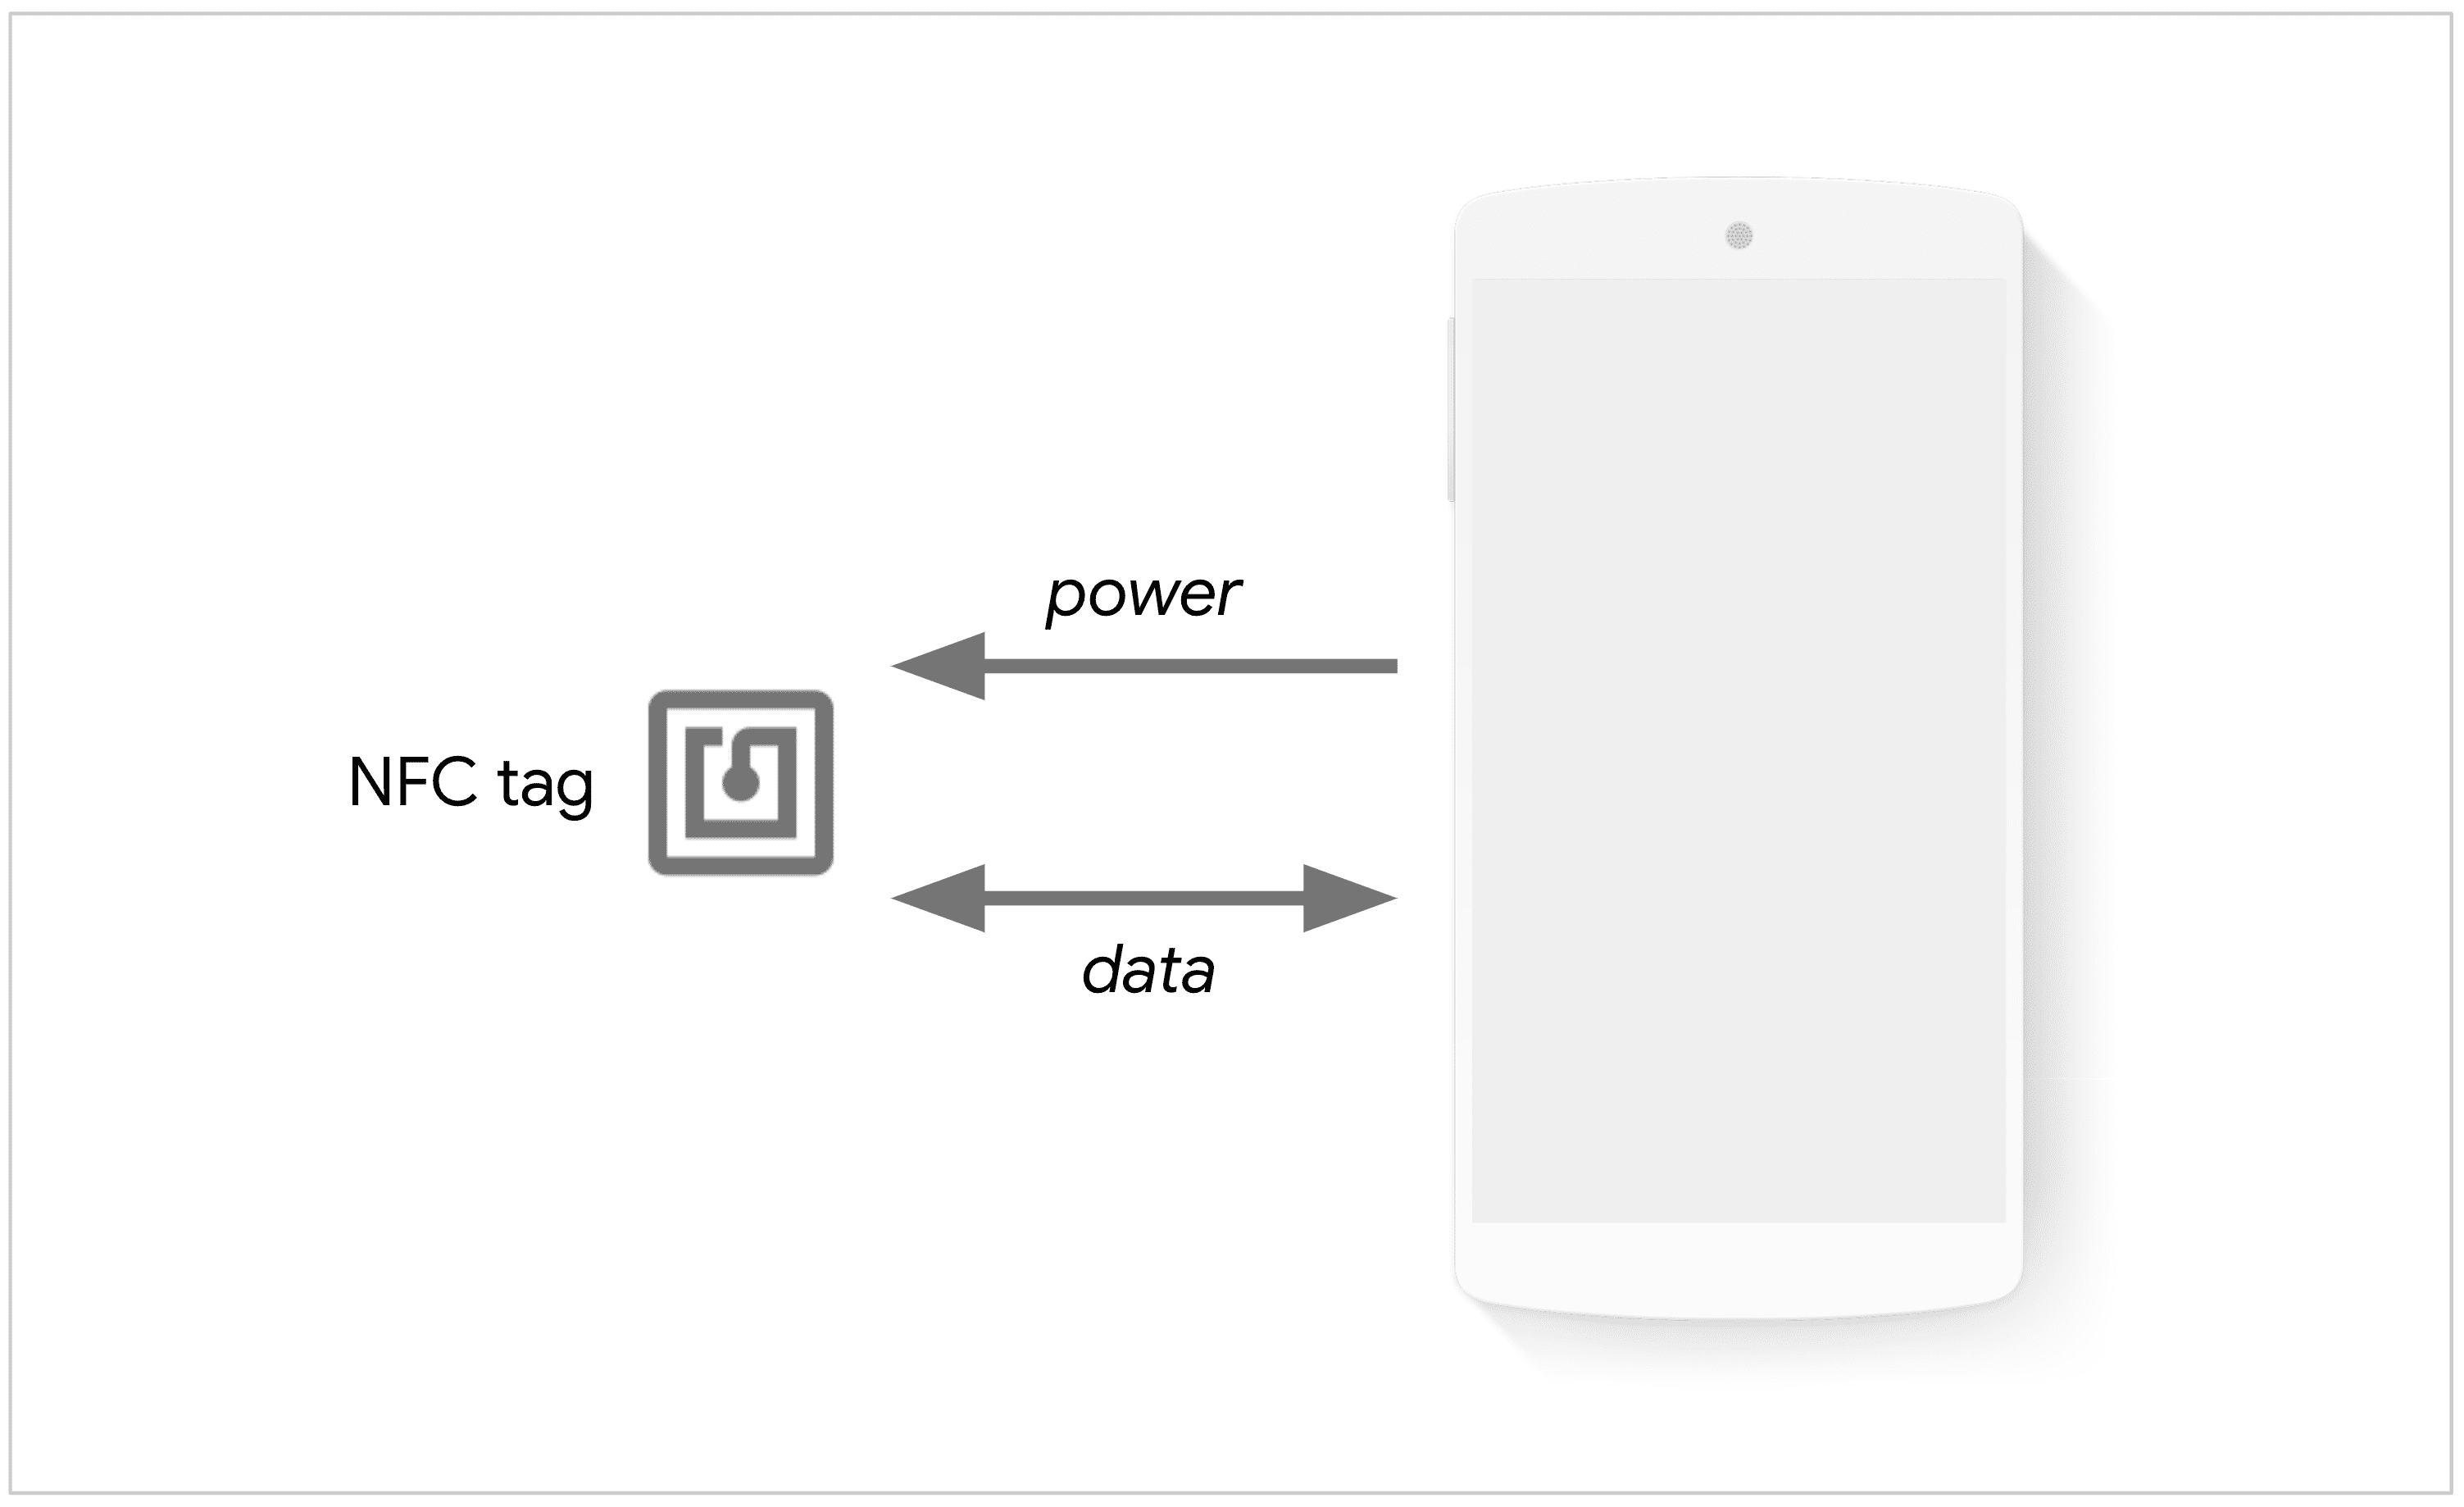 Telefoon die een NFC-tag inschakelt om gegevens uit te wisselen